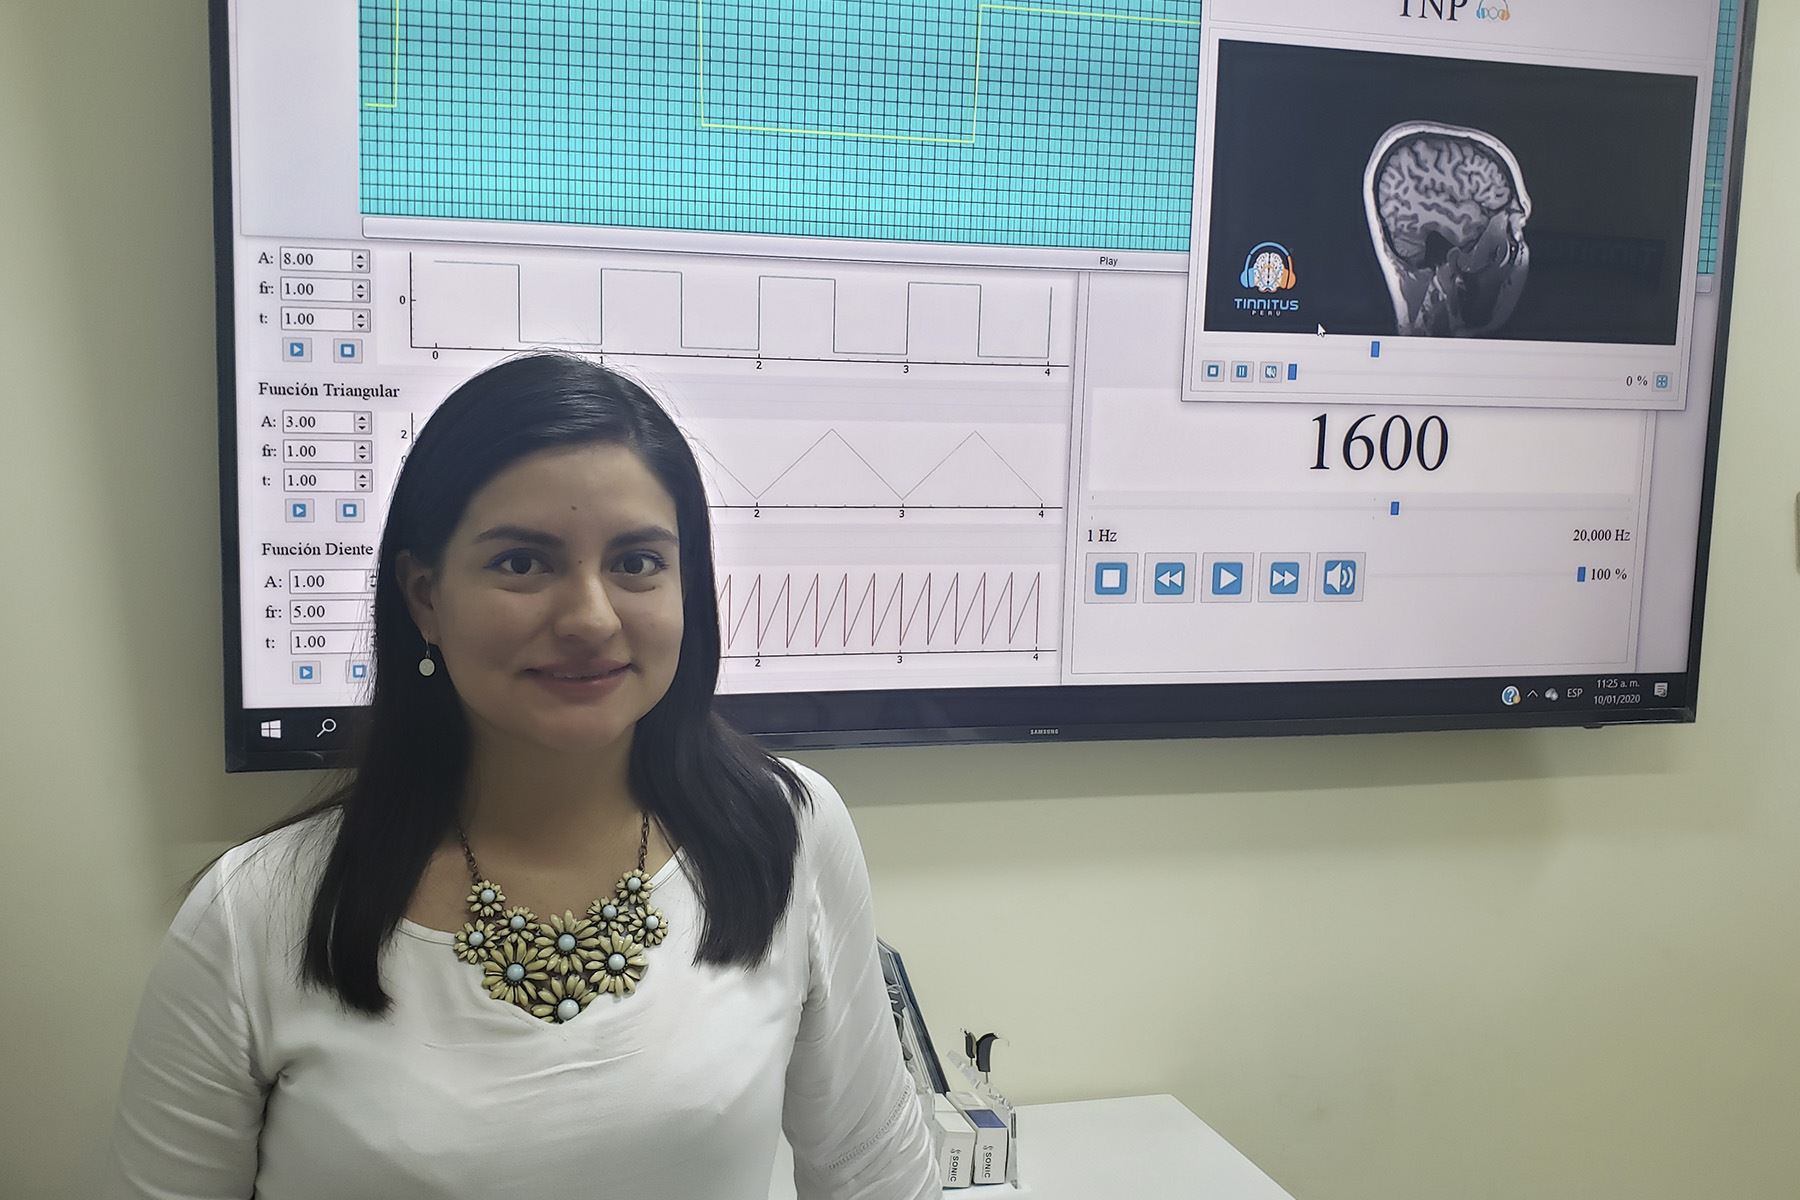 La tecnología de Tinnitus Perú permite reducir en un 80% los zumbidos que afectan a los pacientes. Foto: ANDINA